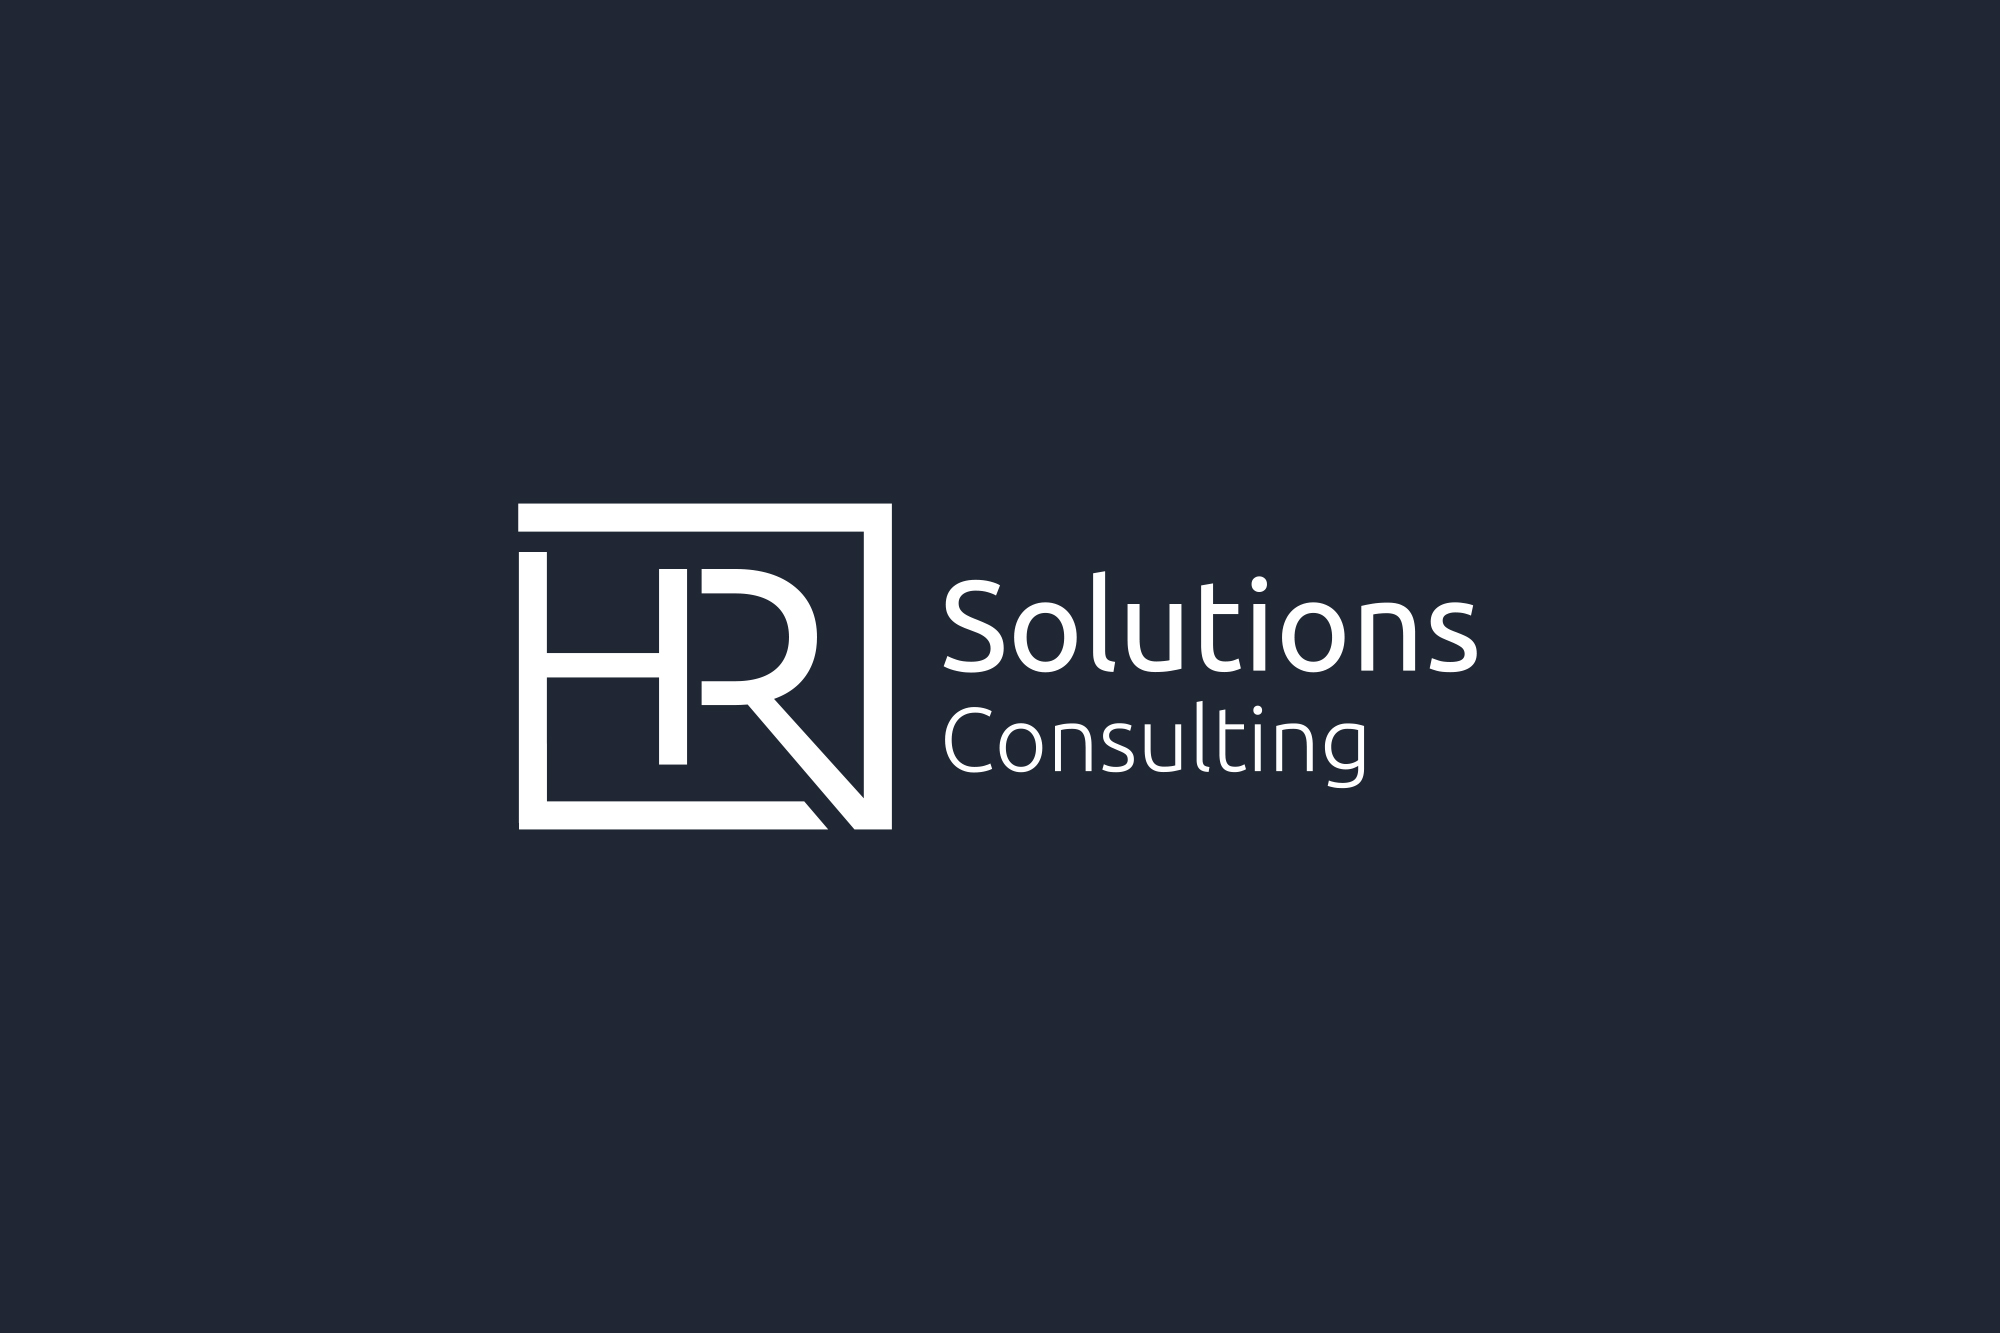 Cabinet HR Solutions Consulting Maroc - Révélez la valeur humaine de votre entreprise